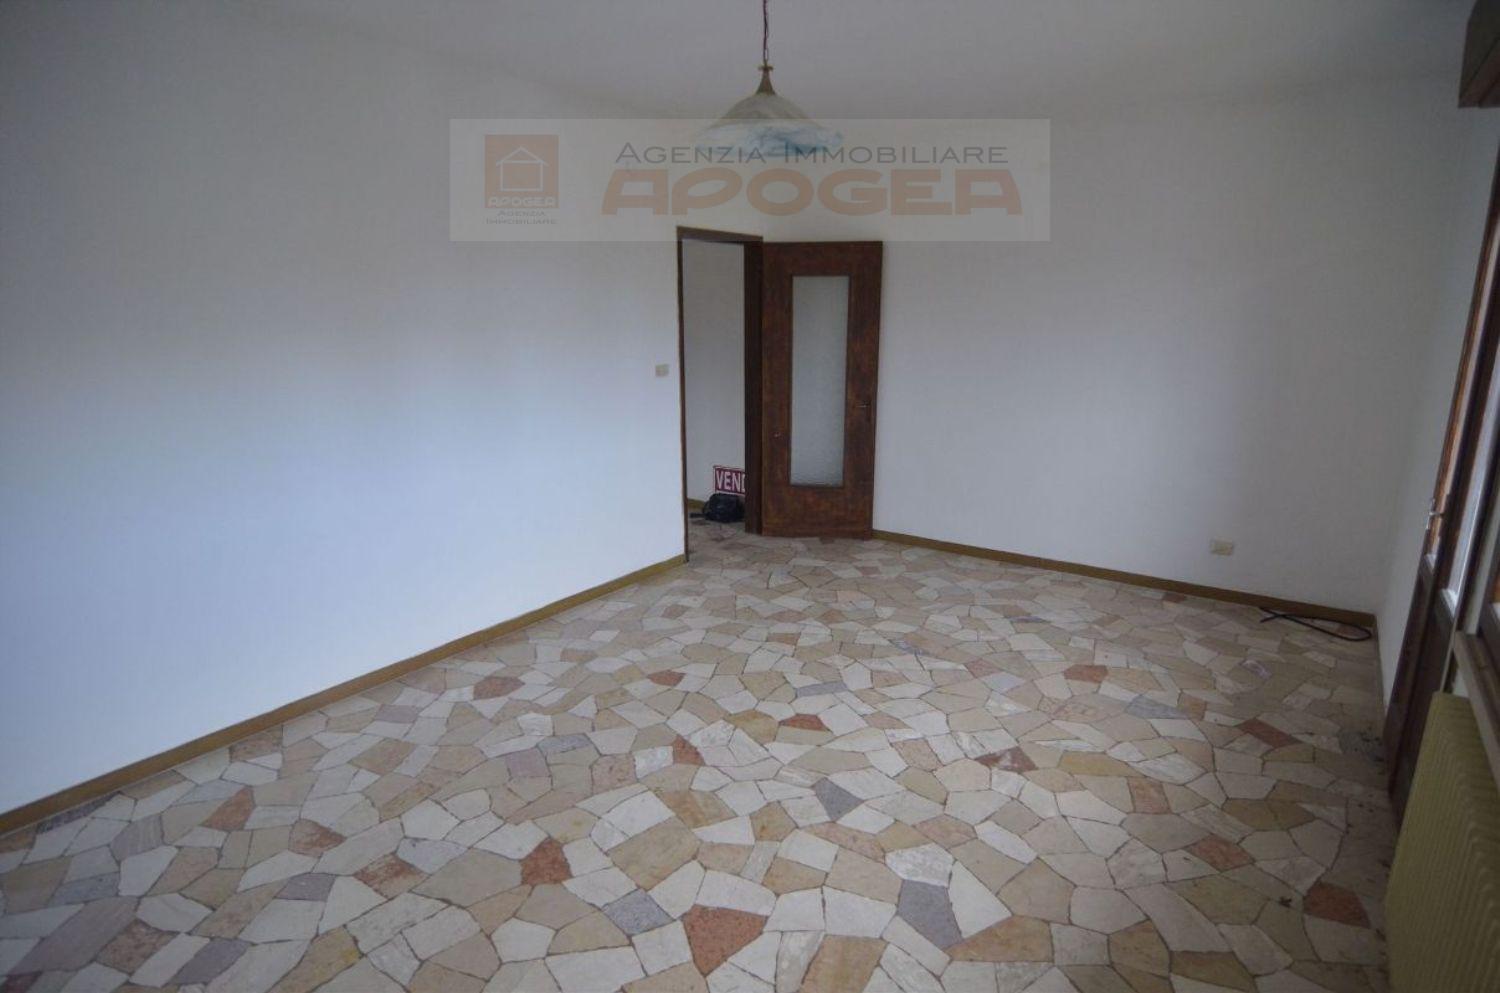 Appartamento in vendita a Stienta, 5 locali, prezzo € 50.000 | CambioCasa.it